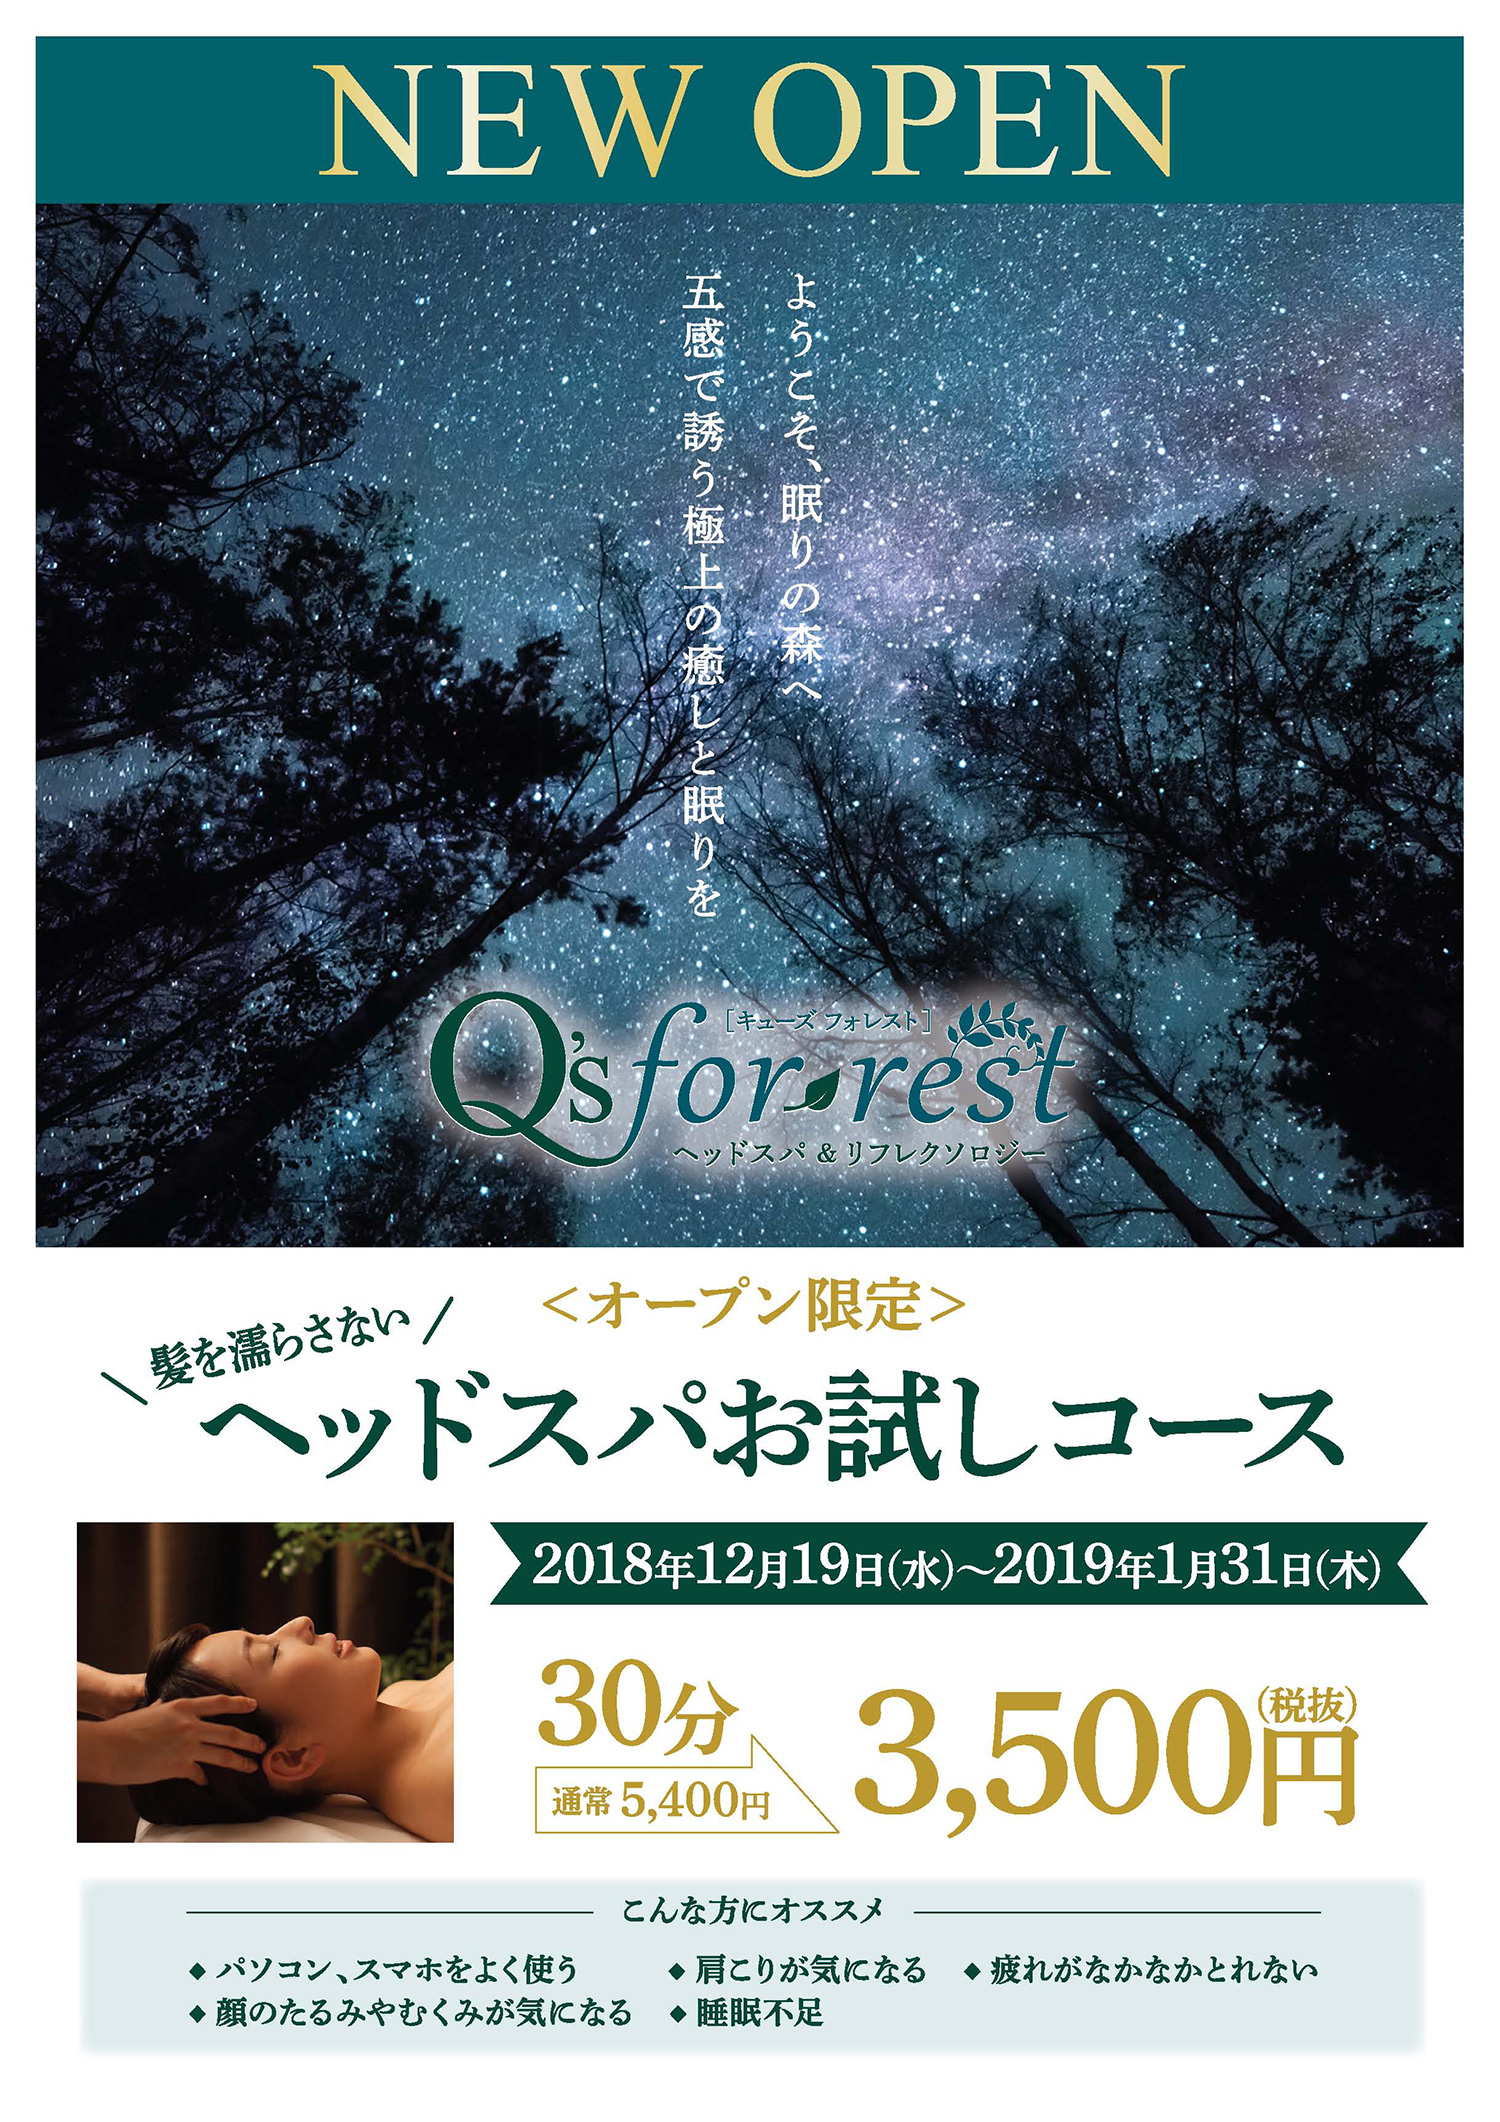 2018/12/19「Q’s for-rest2号店」羽田空港にOPEN!